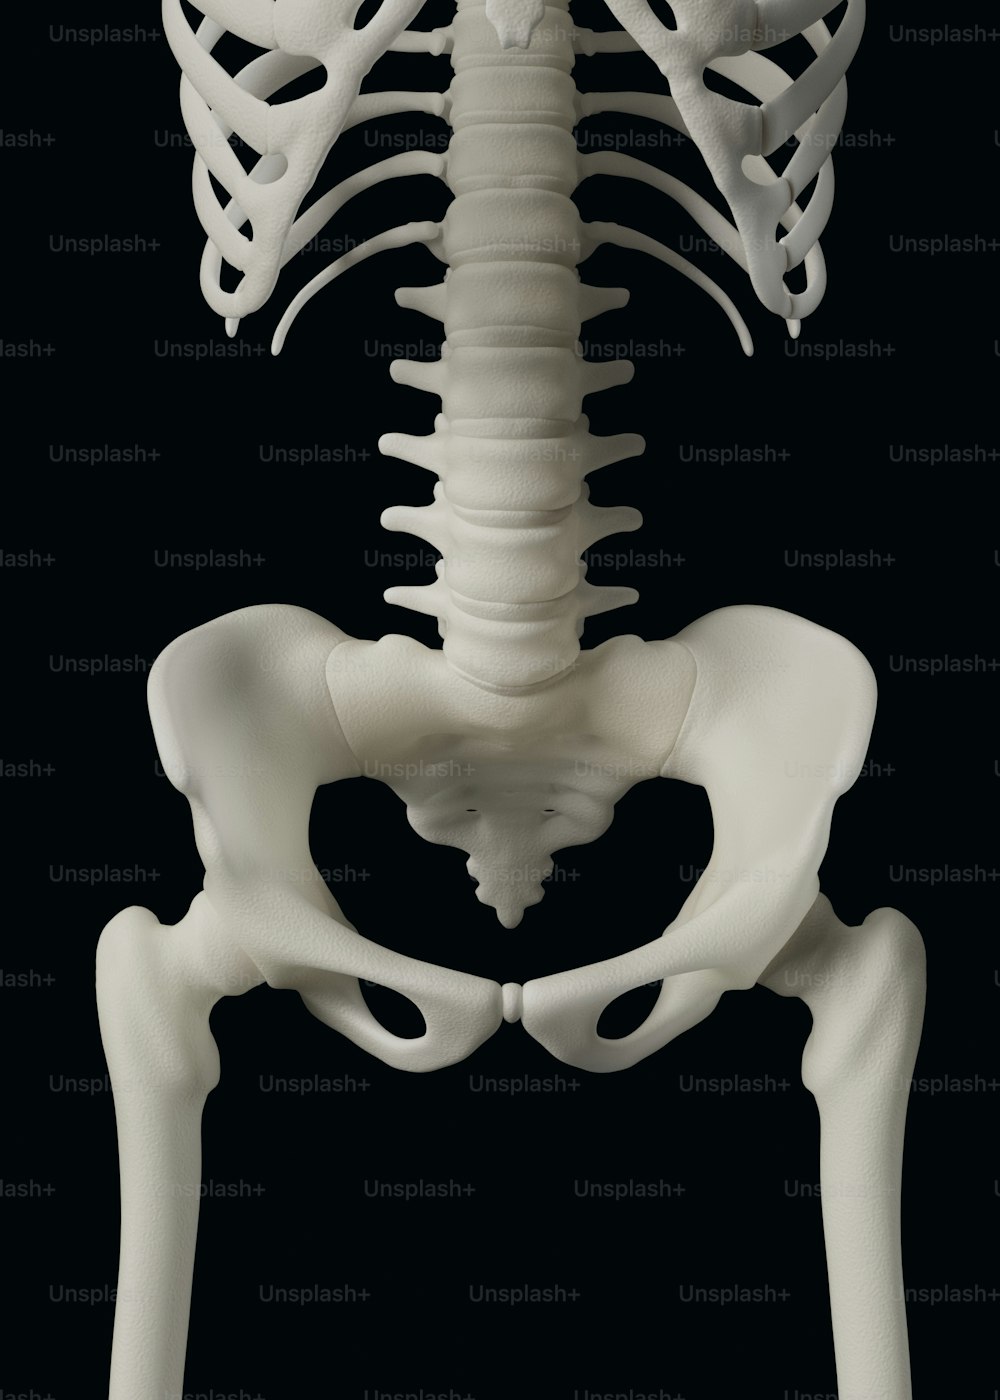 Ein Modell eines menschlichen Skeletts wird gezeigt